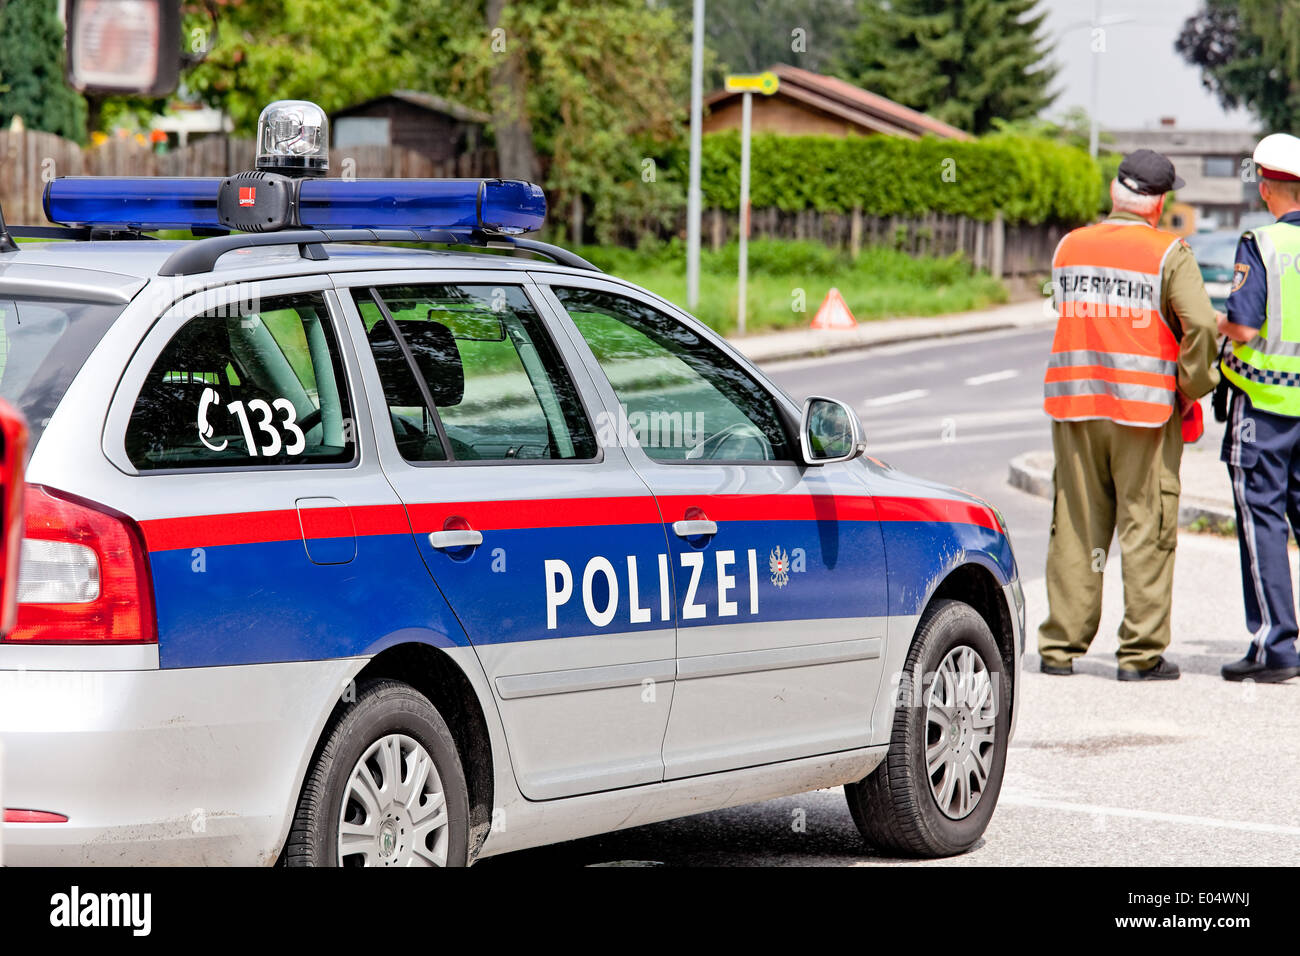 Austrian insurance policy coach, Oesterreichisches Polizeiauto Stock Photo